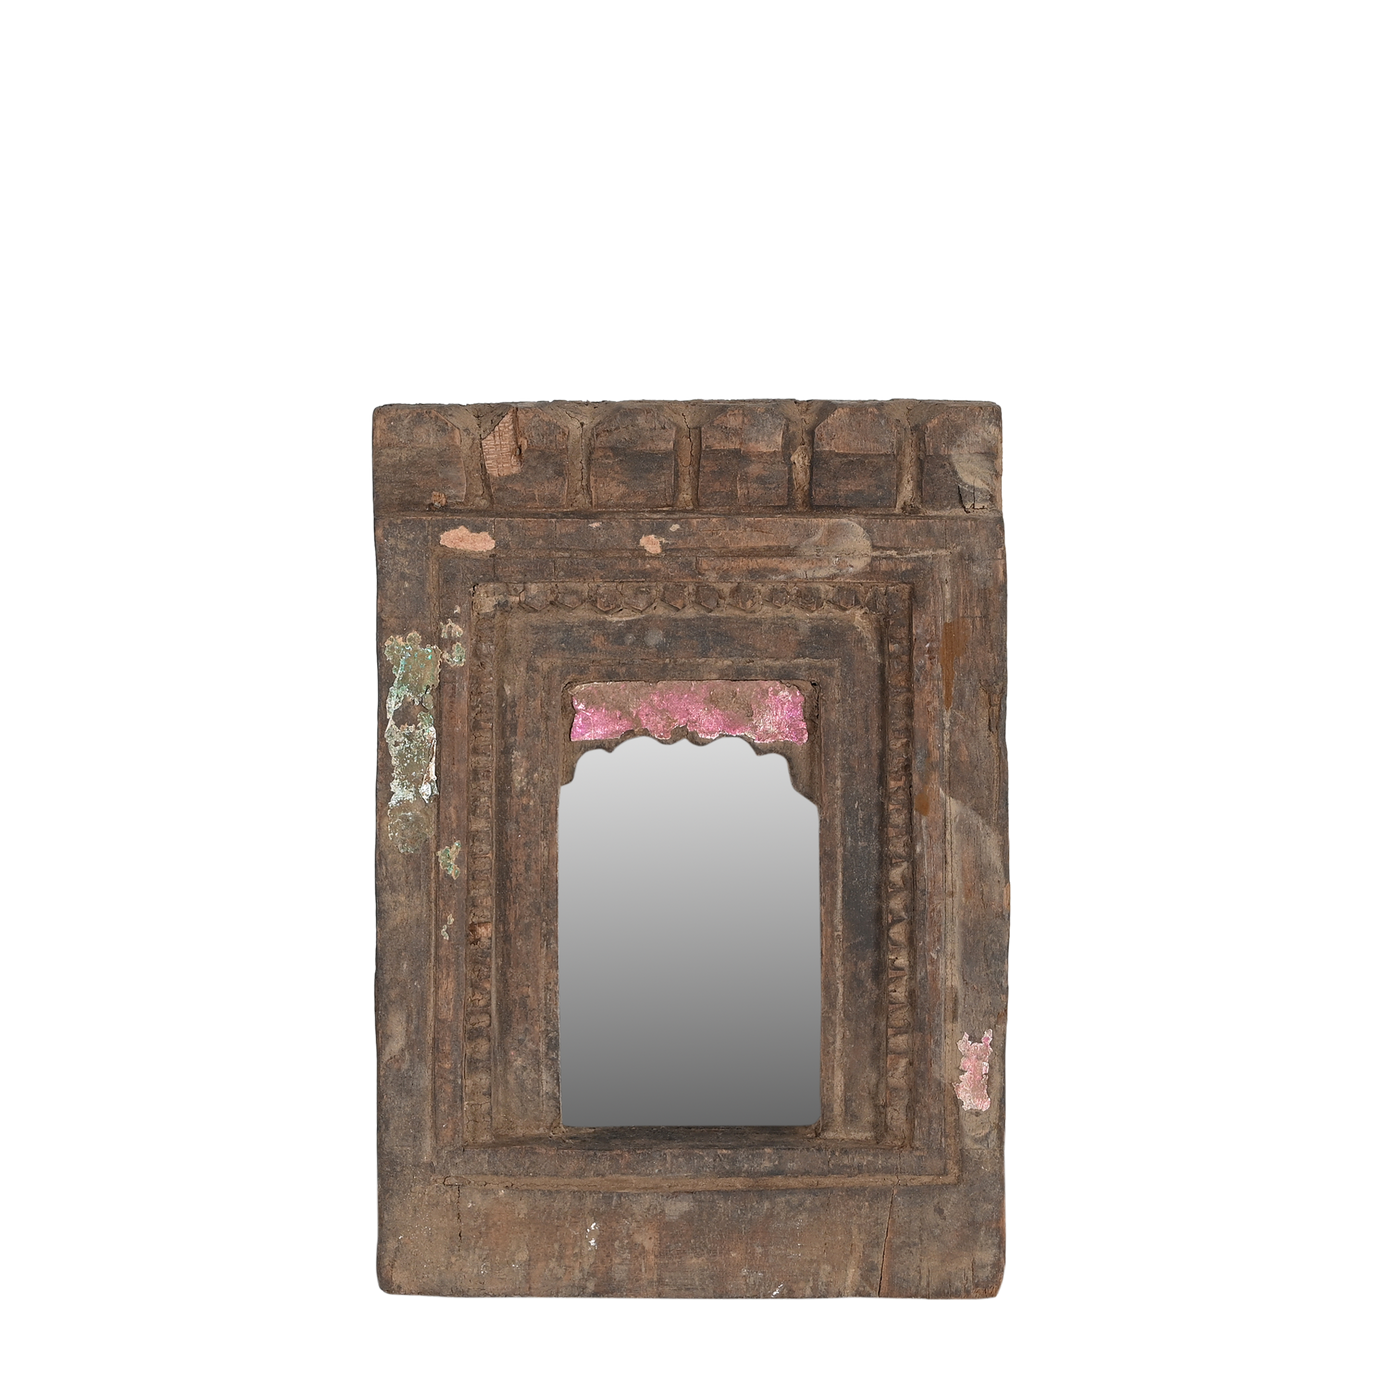 Mandir - Temple mirror n ° 42